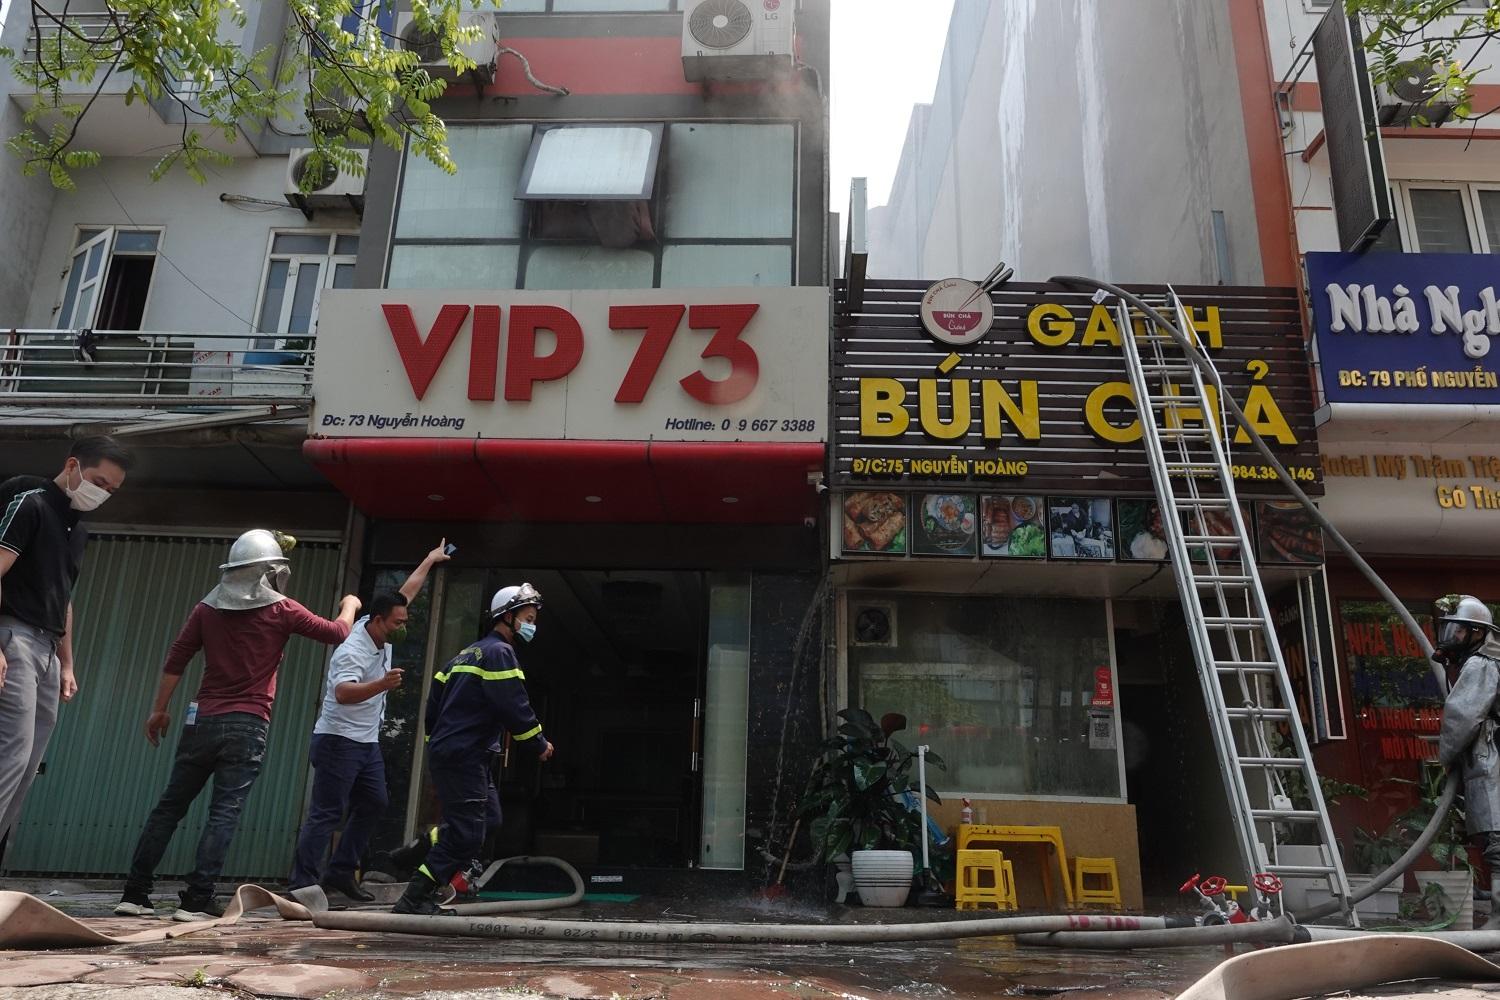 Hà Nội: Cháy quán bún chả trên đường Nguyễn Hoàng, khách chạy thoát thân